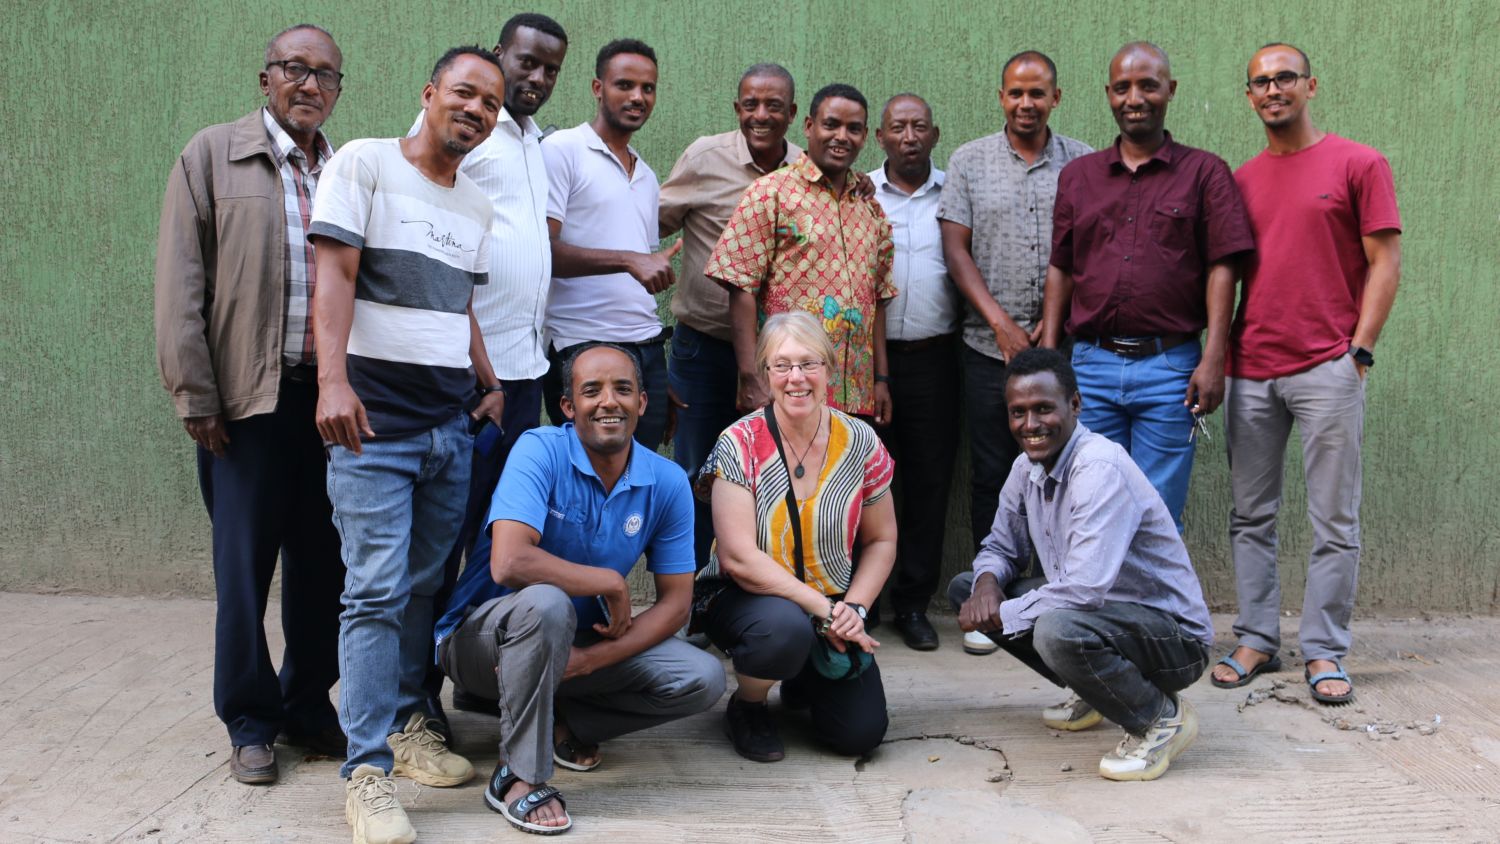 PAN Ethiopia teams meet up for week of training in Arba Minch